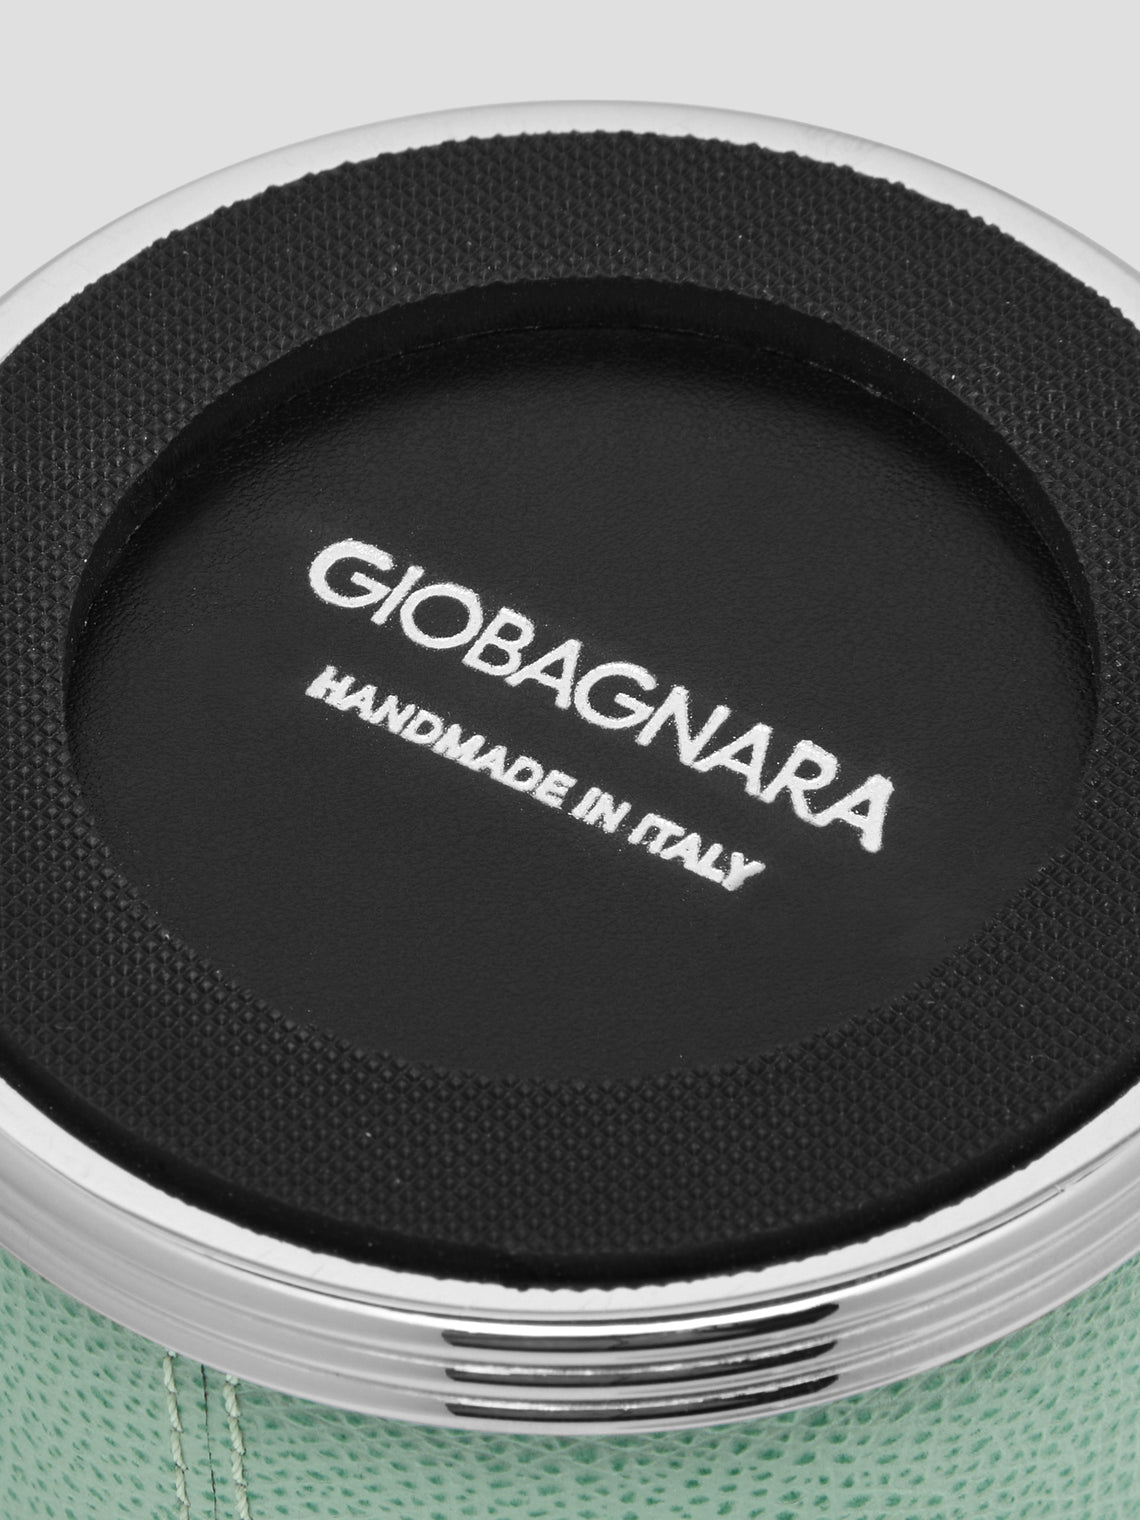 Giobagnara - Amalfi Leather Small Box -  - ABASK